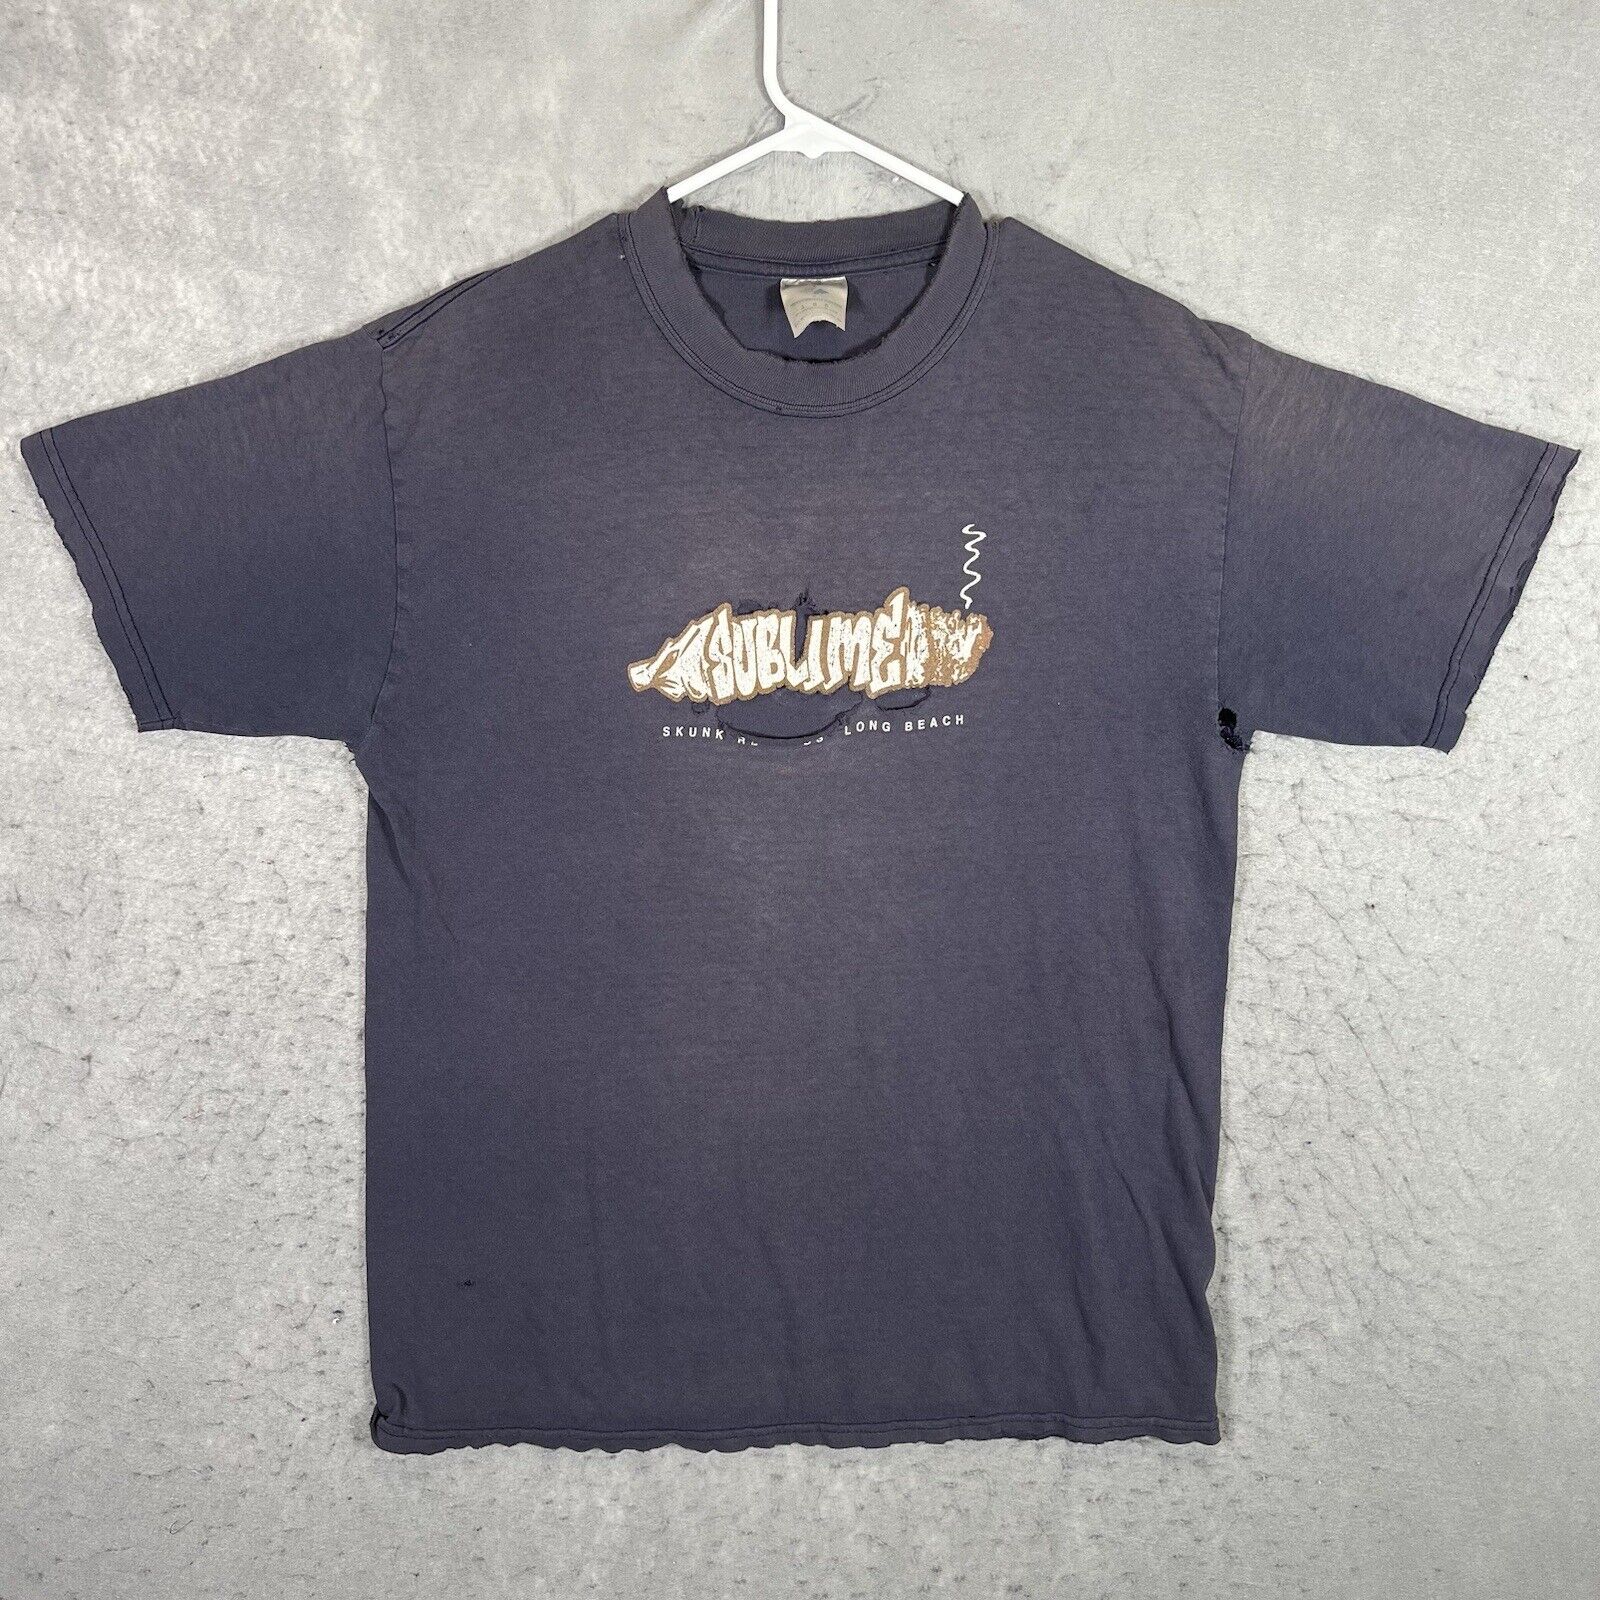 A1 Vintage 90s Sublime Band Skunk Records T Shirt Adult Large Blue Thrashed Mens